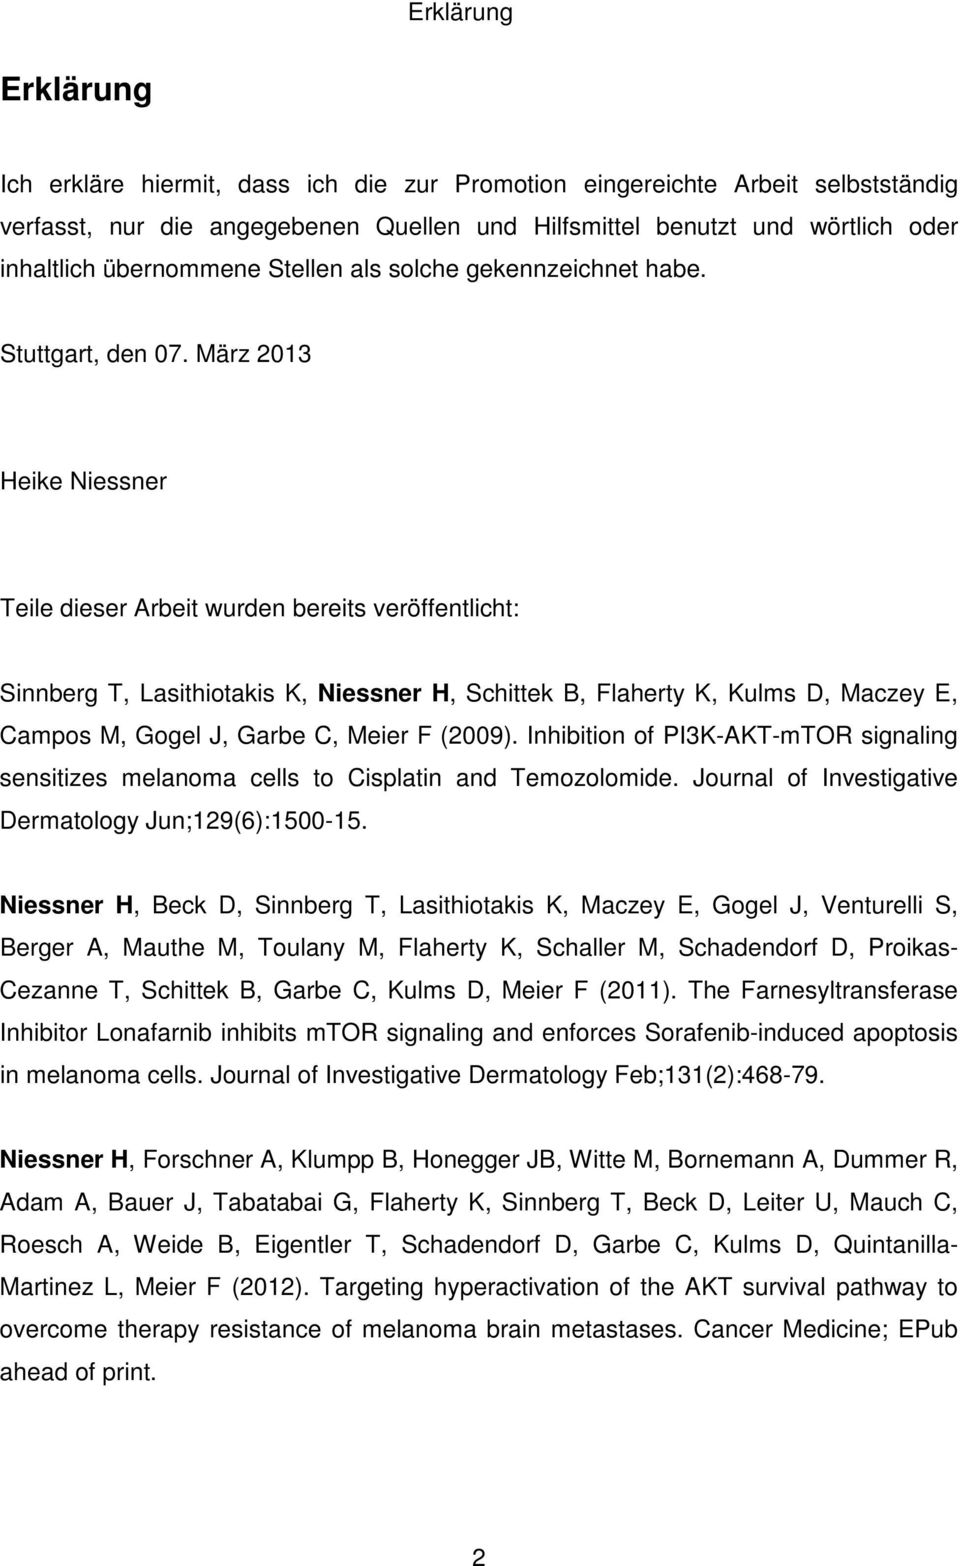 März 2013 Heike Niessner Teile dieser Arbeit wurden bereits veröffentlicht: Sinnberg T, Lasithiotakis K, Niessner H, Schittek B, Flaherty K, Kulms D, Maczey E, Campos M, Gogel J, Garbe C, Meier F